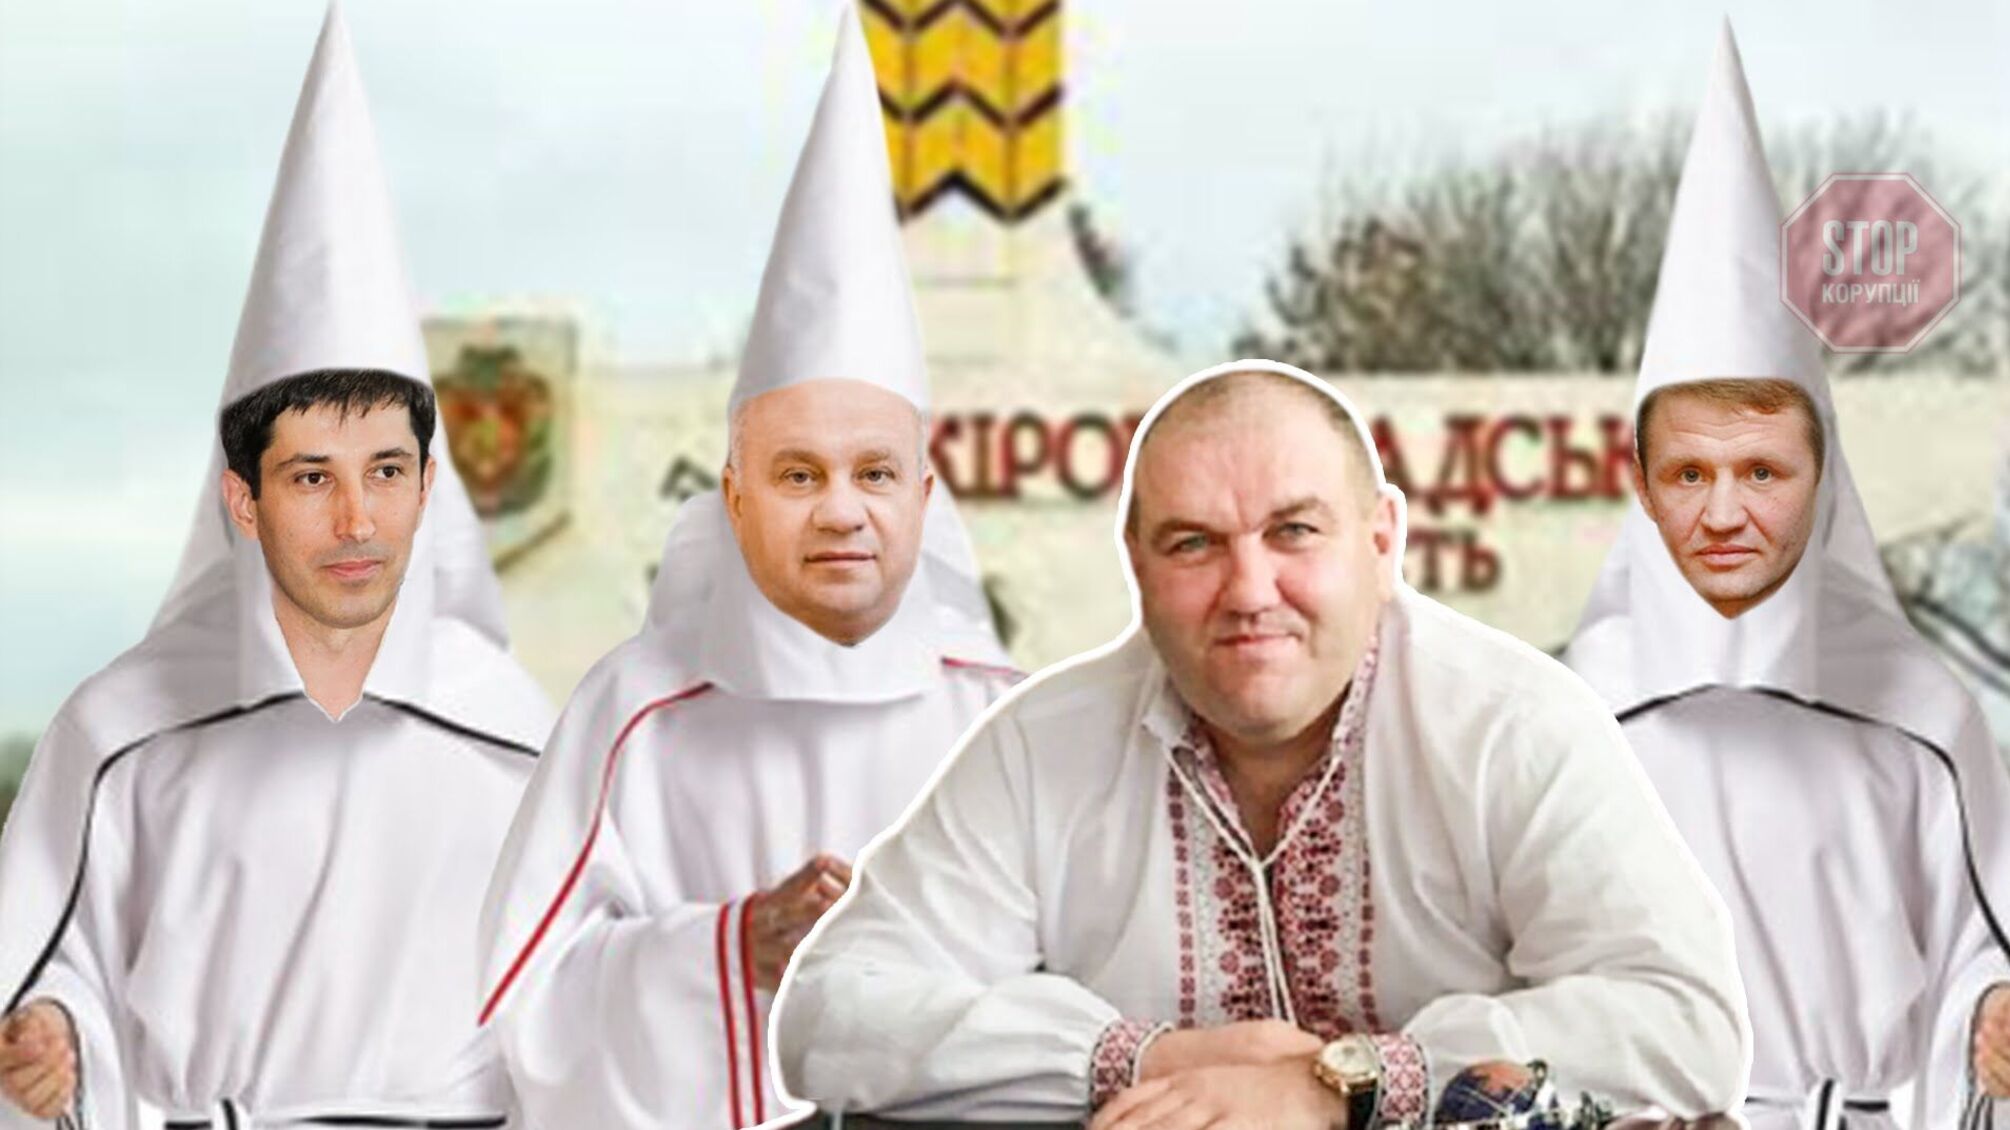 «Нам треба «папу» в‘@бати» – голова Кіровоградської облради Чорноіваненко вирішує, як «прибрати» незручного Поворознюка